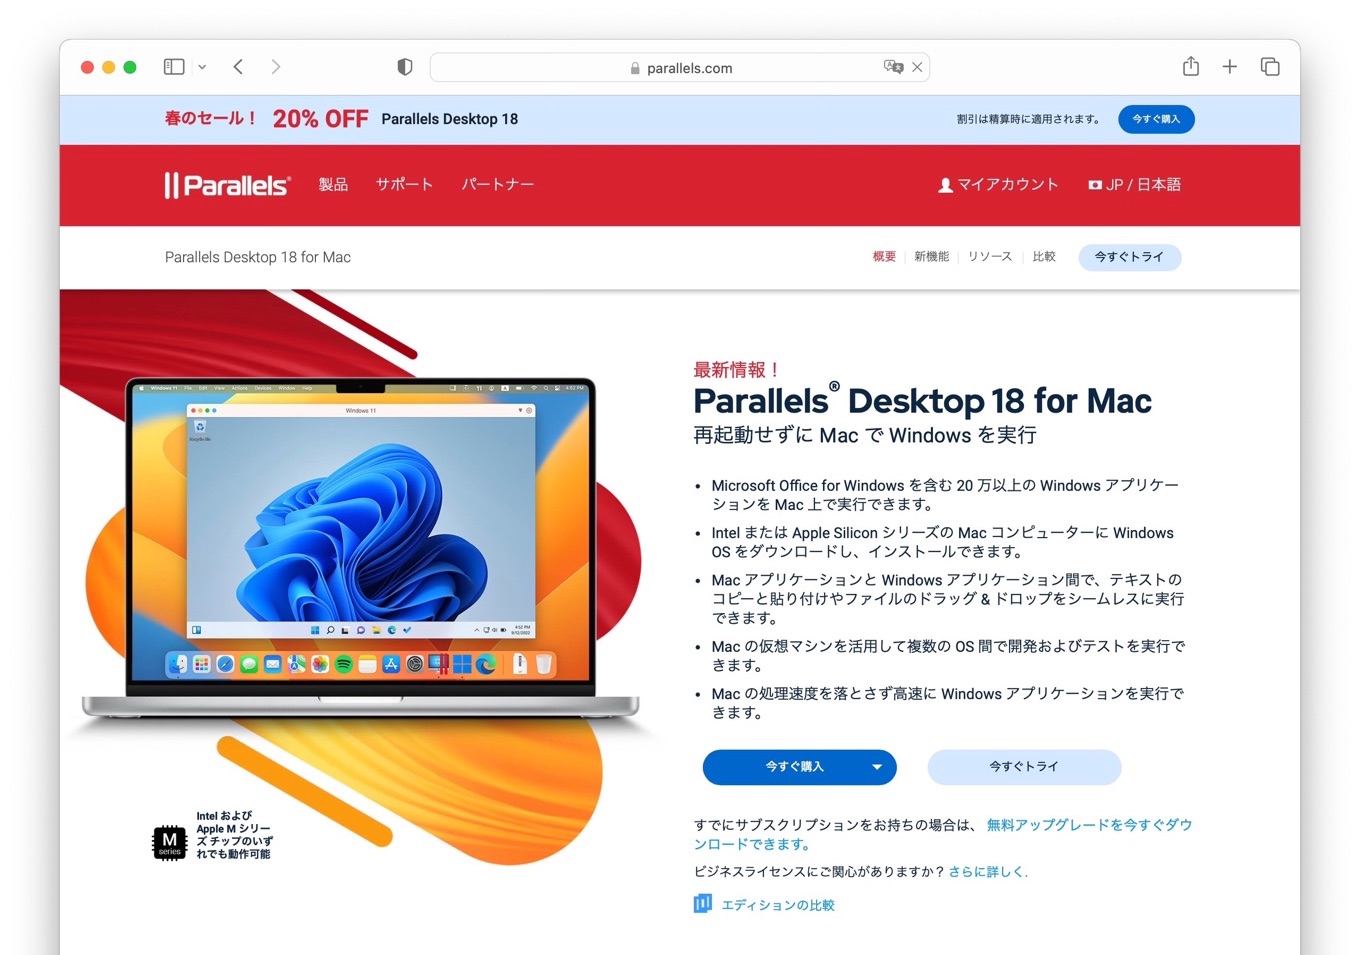 Parallels Desktop v18 for Apple Silicon Mac 20off sale